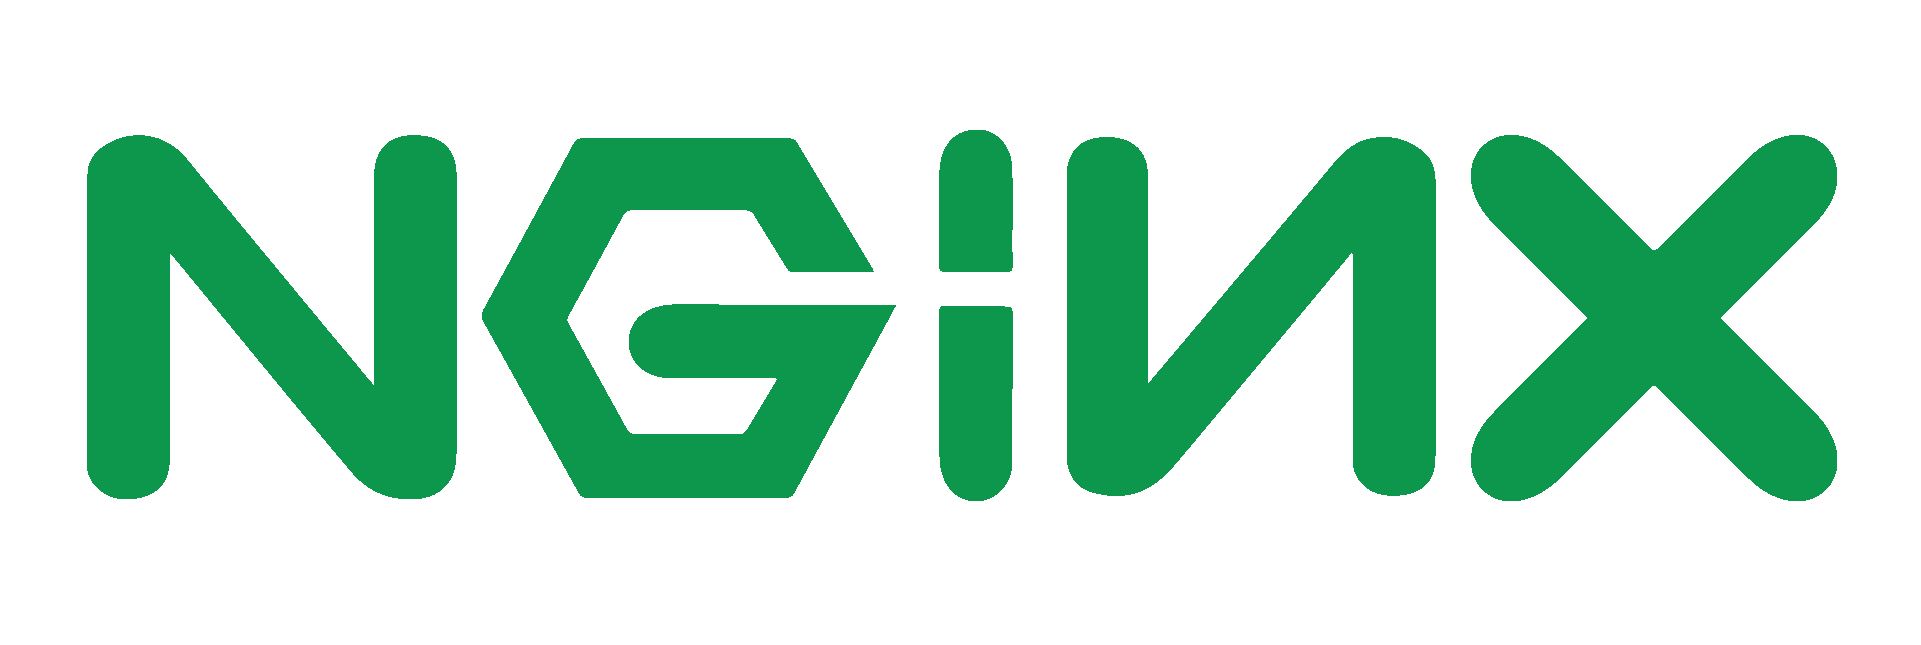 NGINX-logo-rgb-large